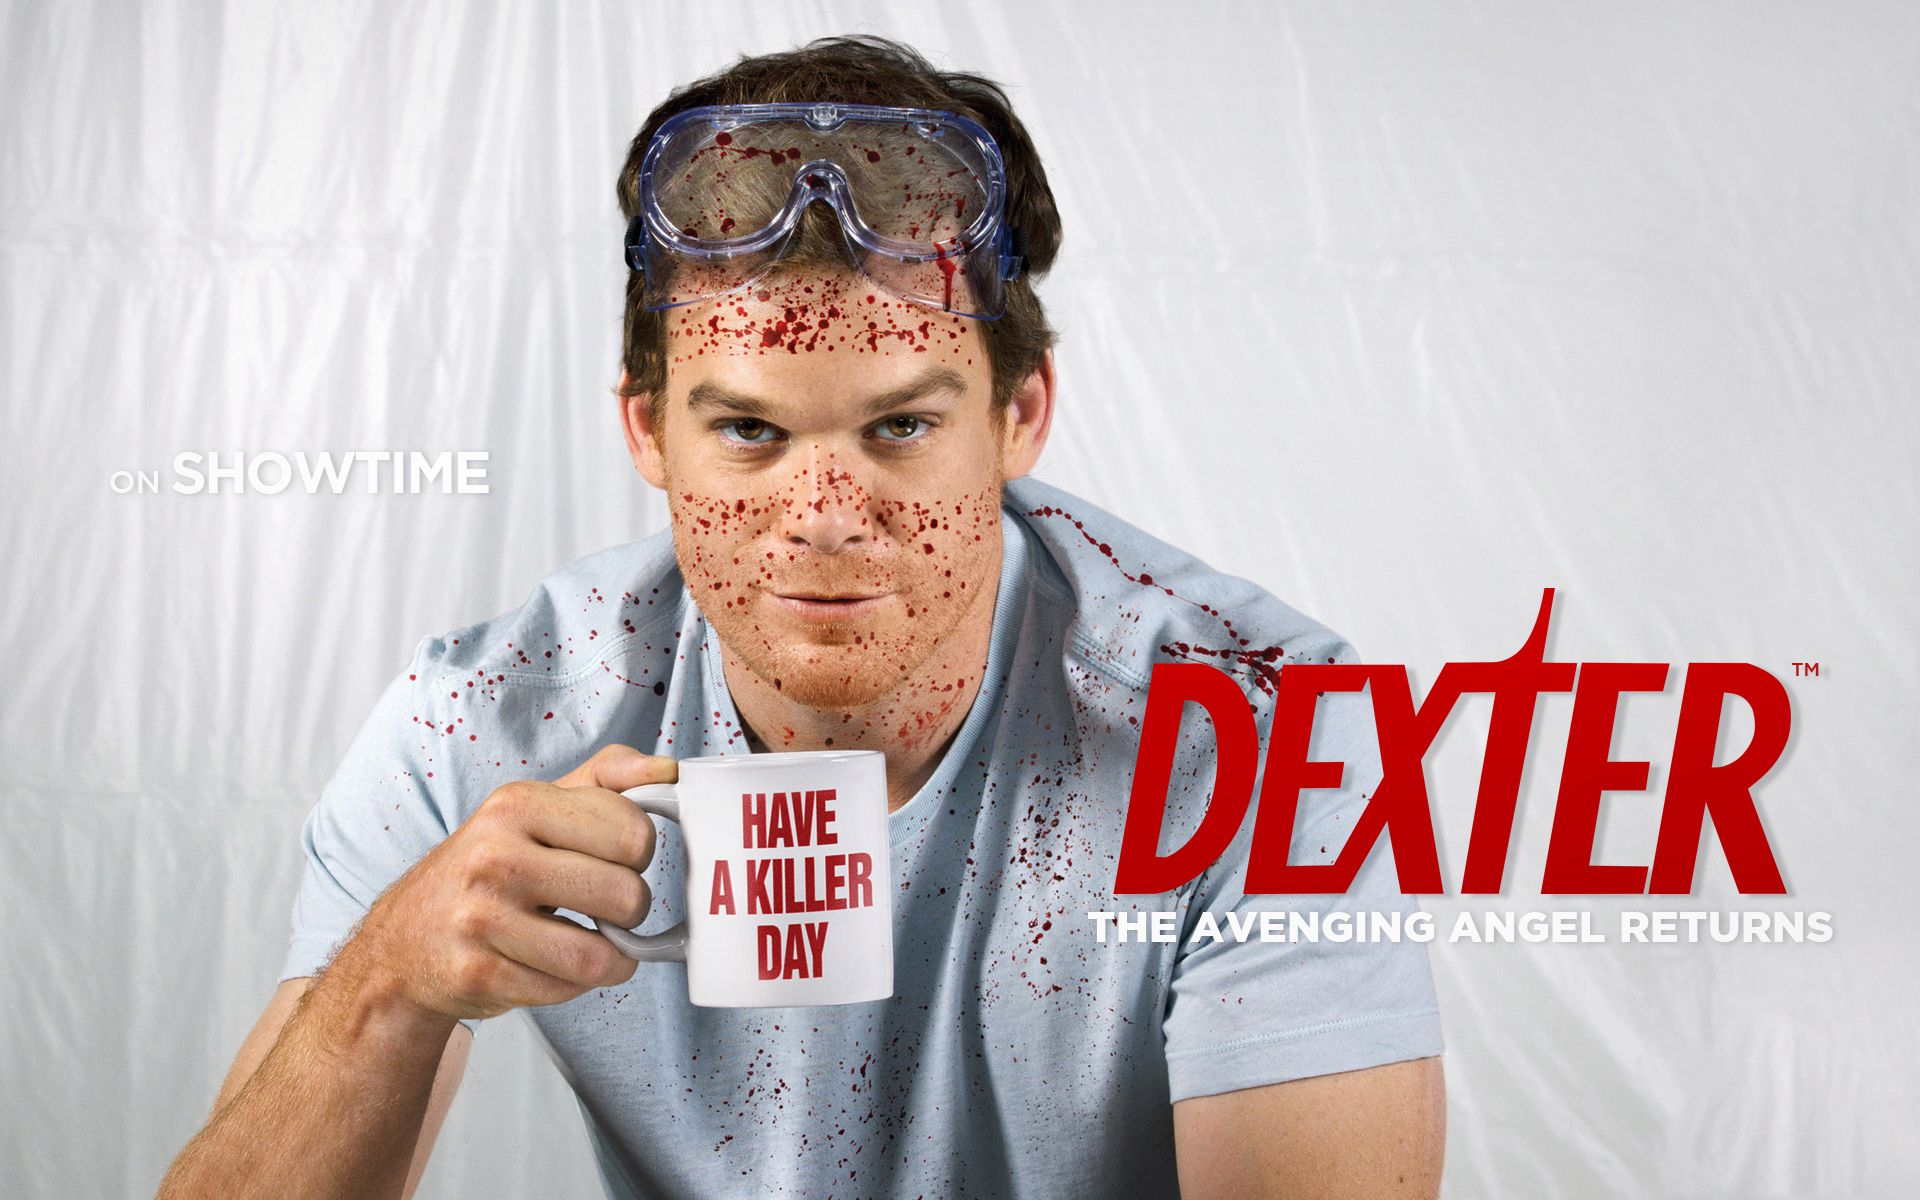 Dexter Wallpaper Best HD Desktop Widescreen